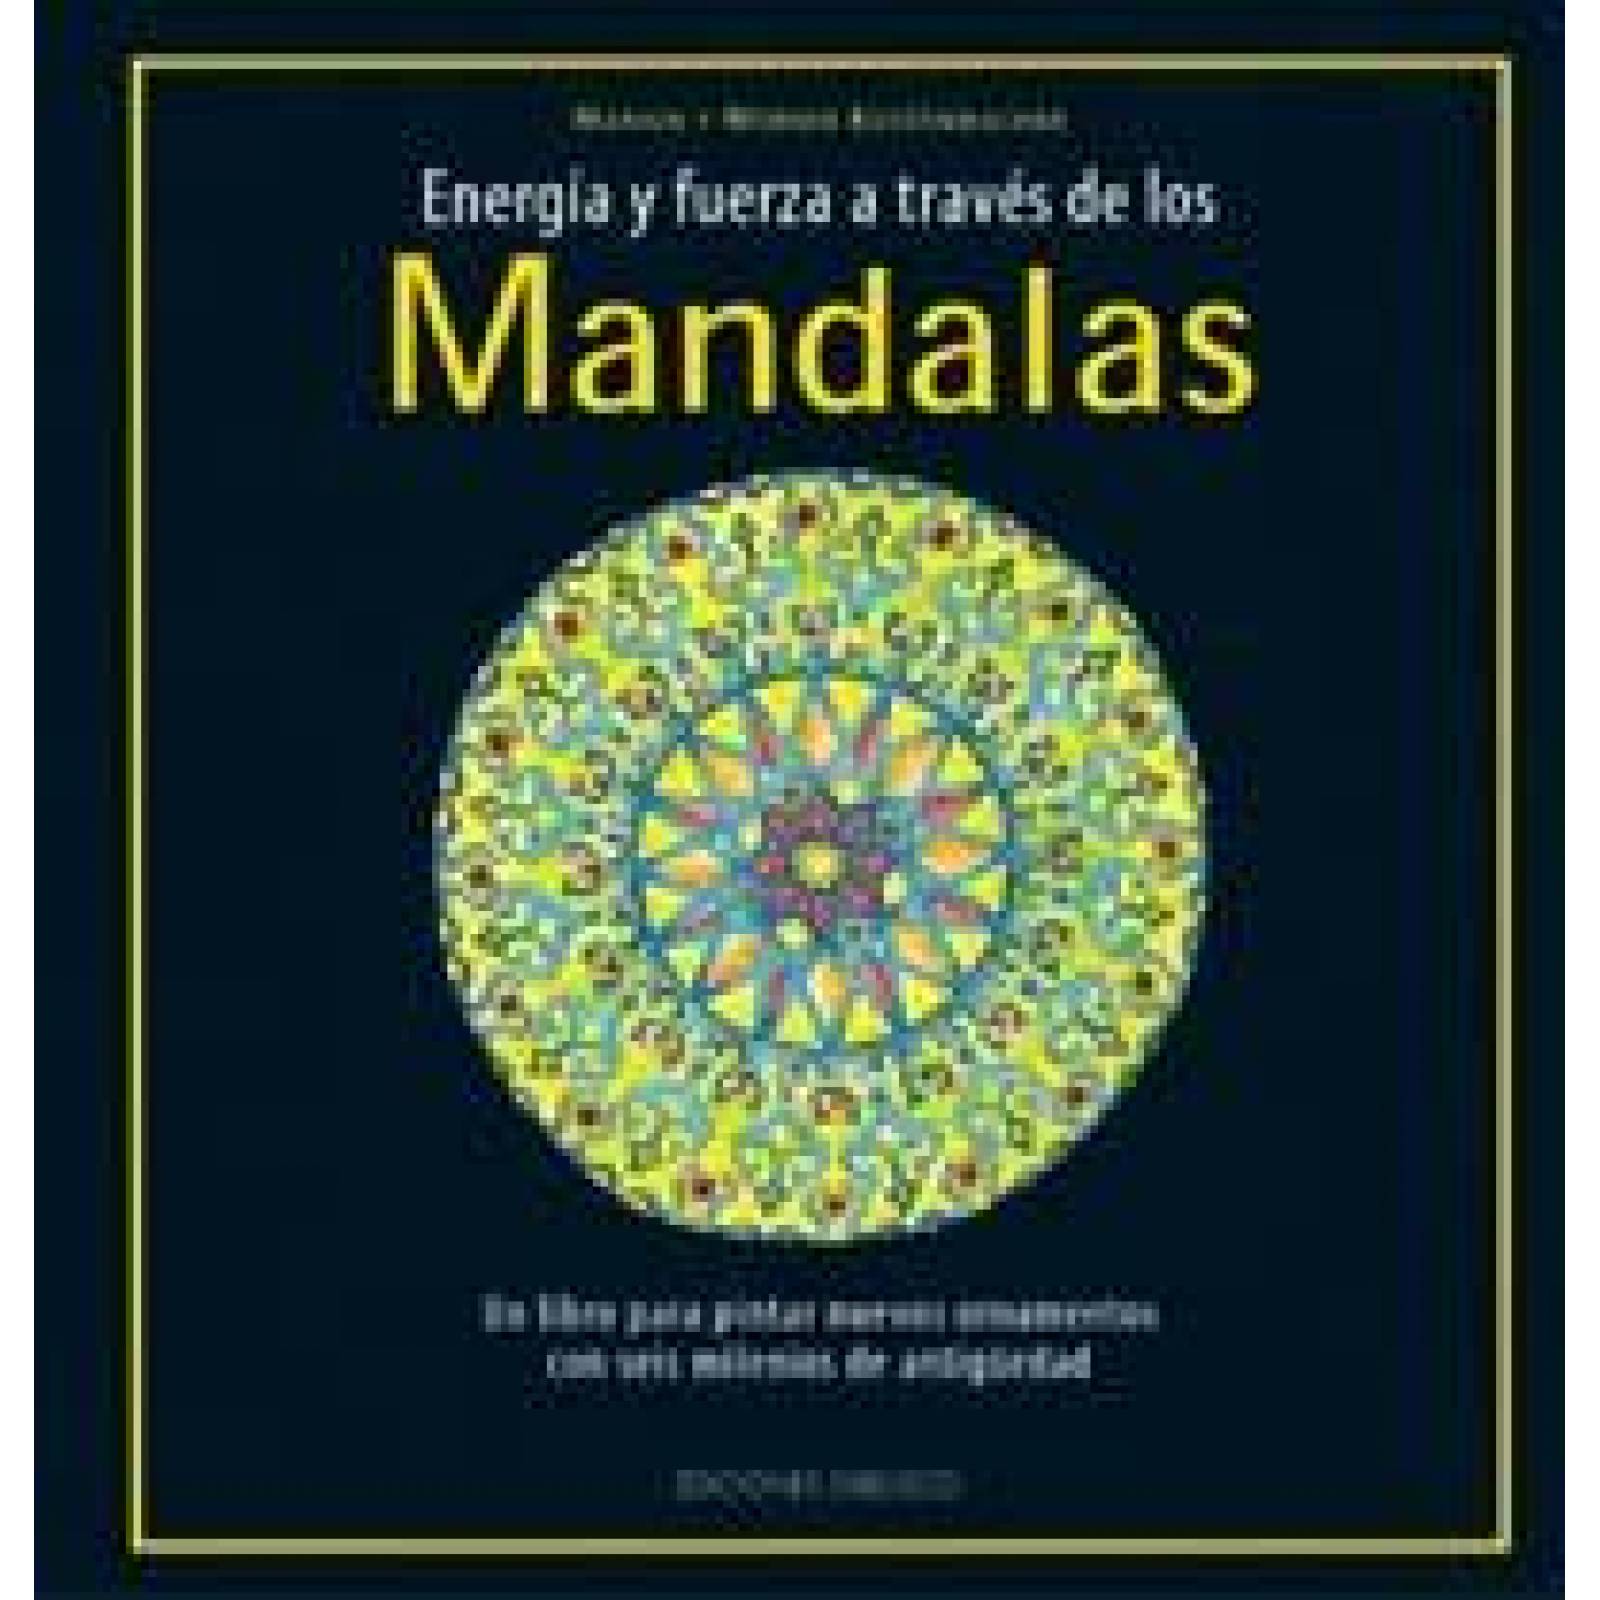 Mandalas-energía y fuerza a través de los- 